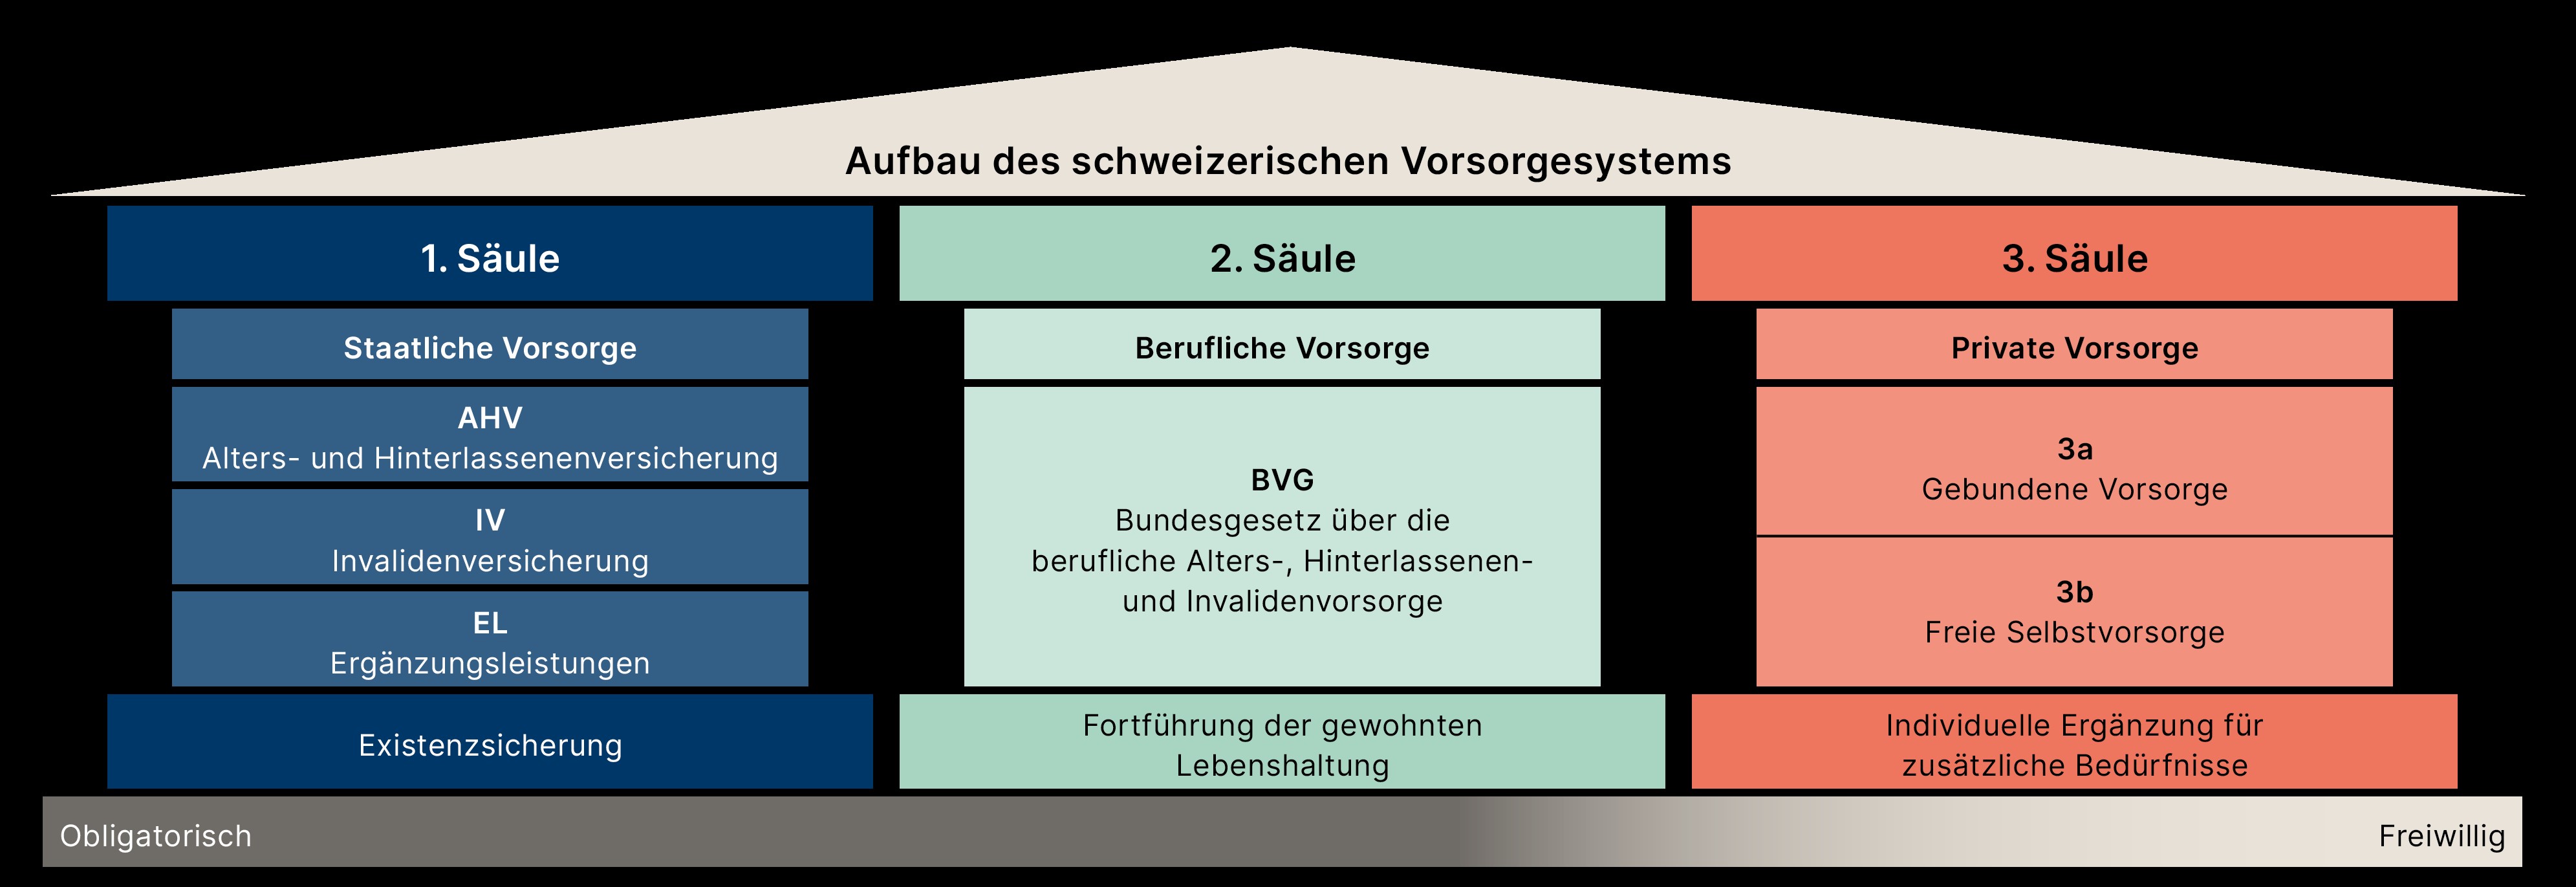 Aufbau des schweizerischen Vorsorgesystems